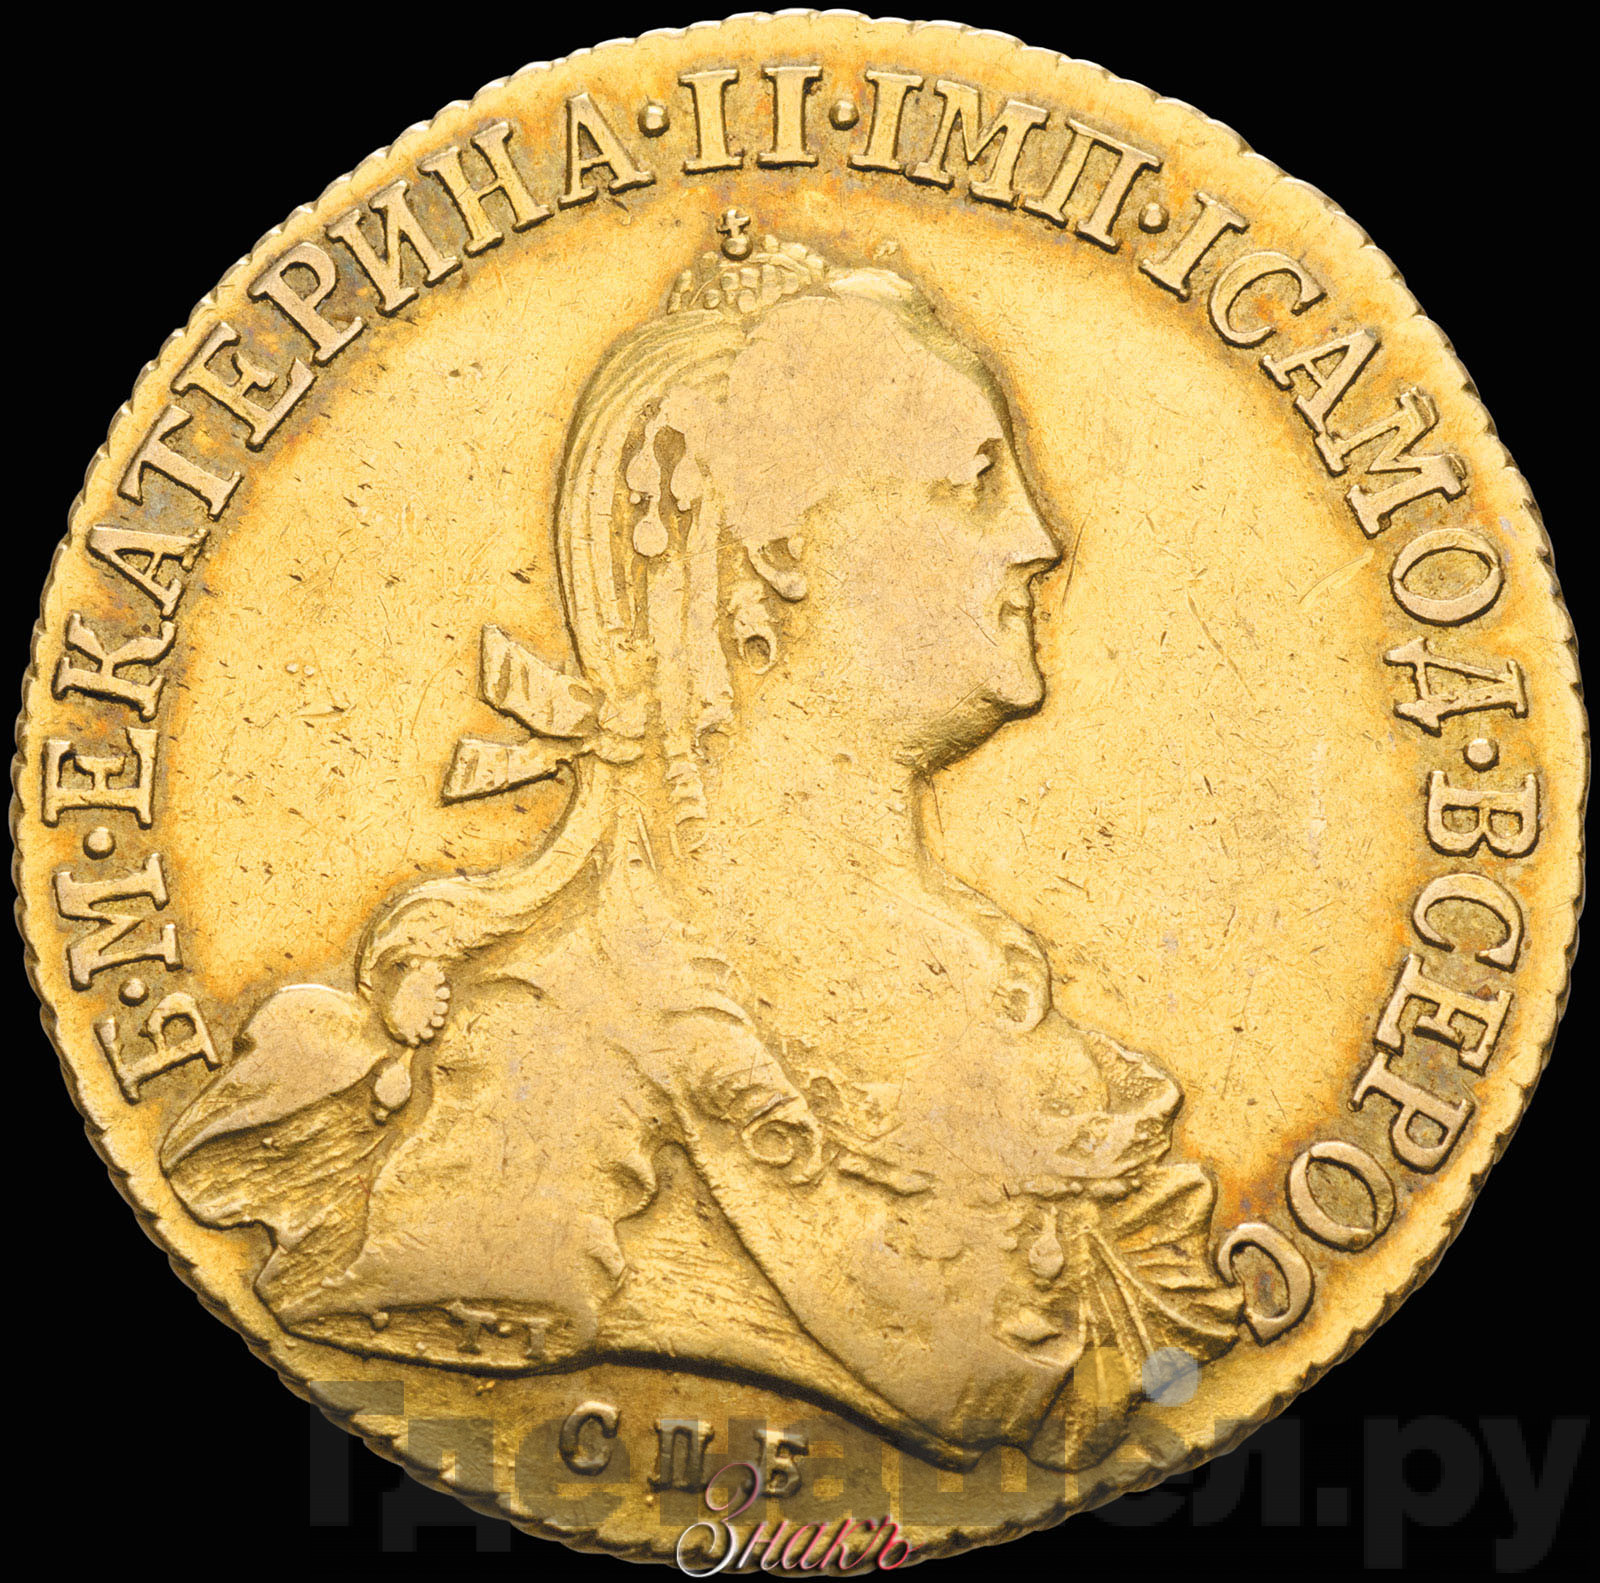 10 рублей 1775 года СПБ